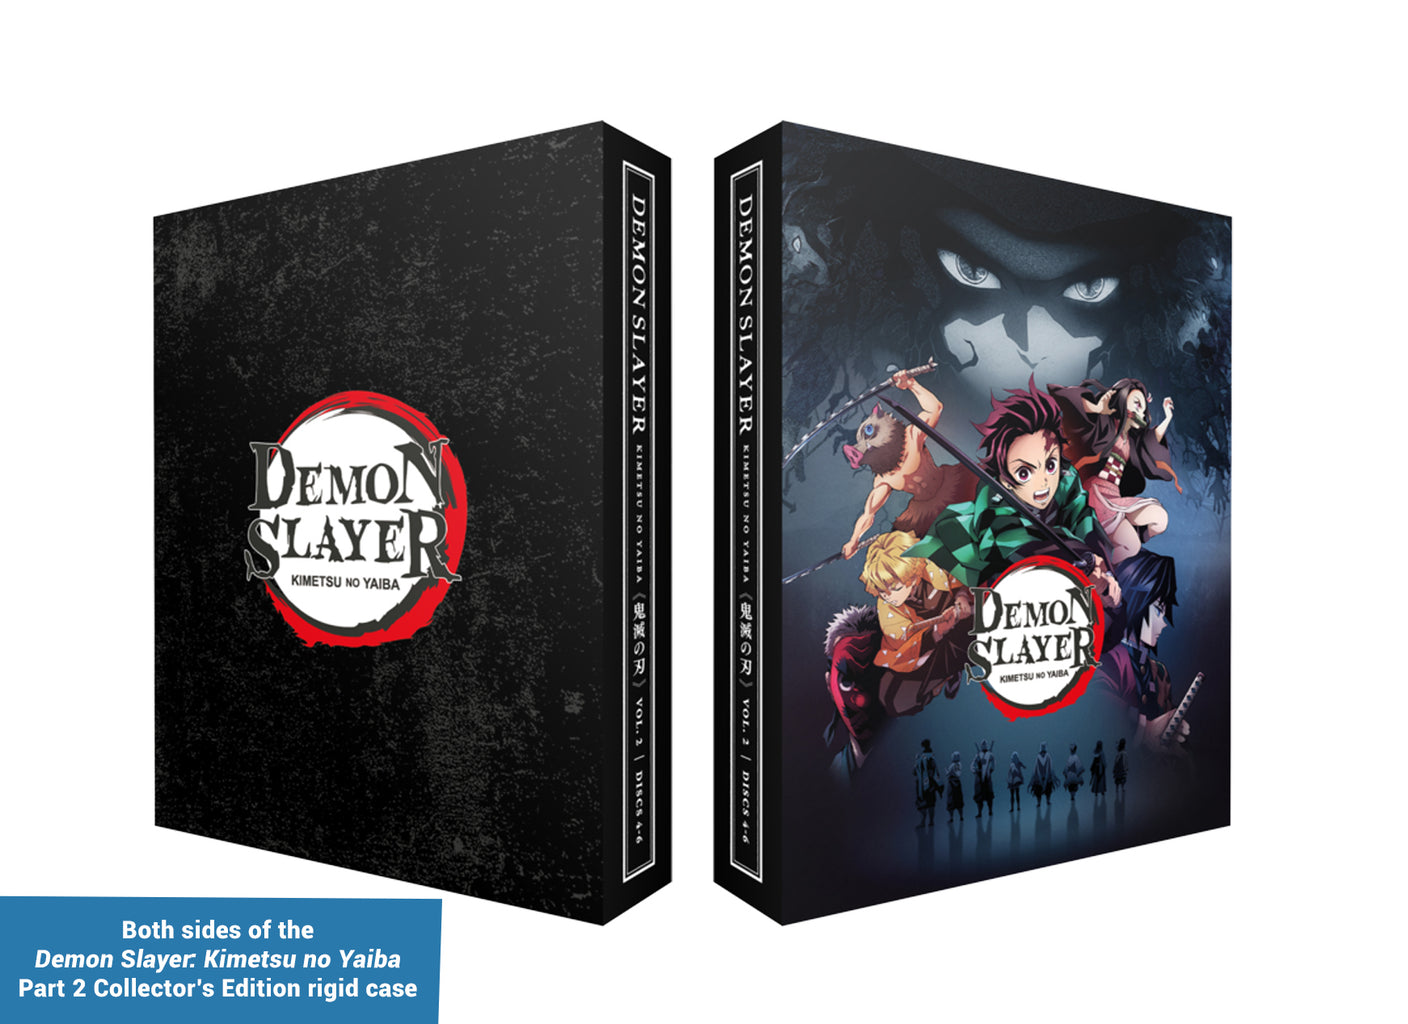 Demon Slayer : Kimetsu no Yaiba Vol.2 Episodes 14-26 Blu-Ray Box